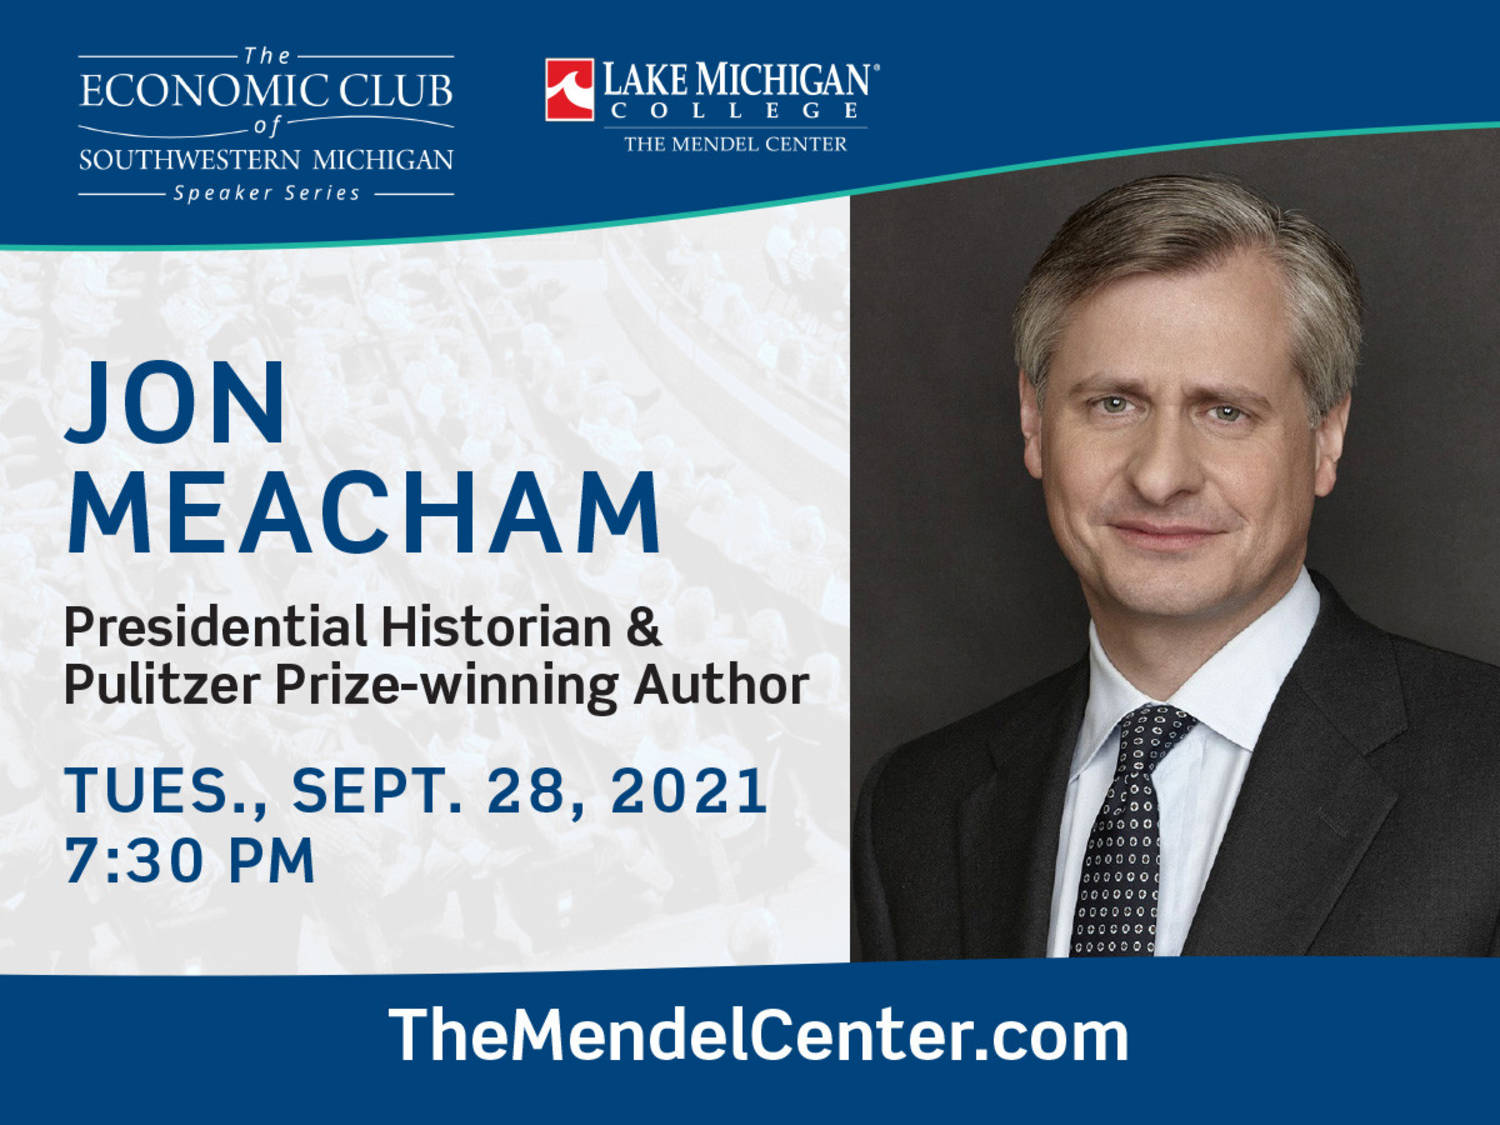 Jon Meacham to speak at The Mendel Center Sept. 28